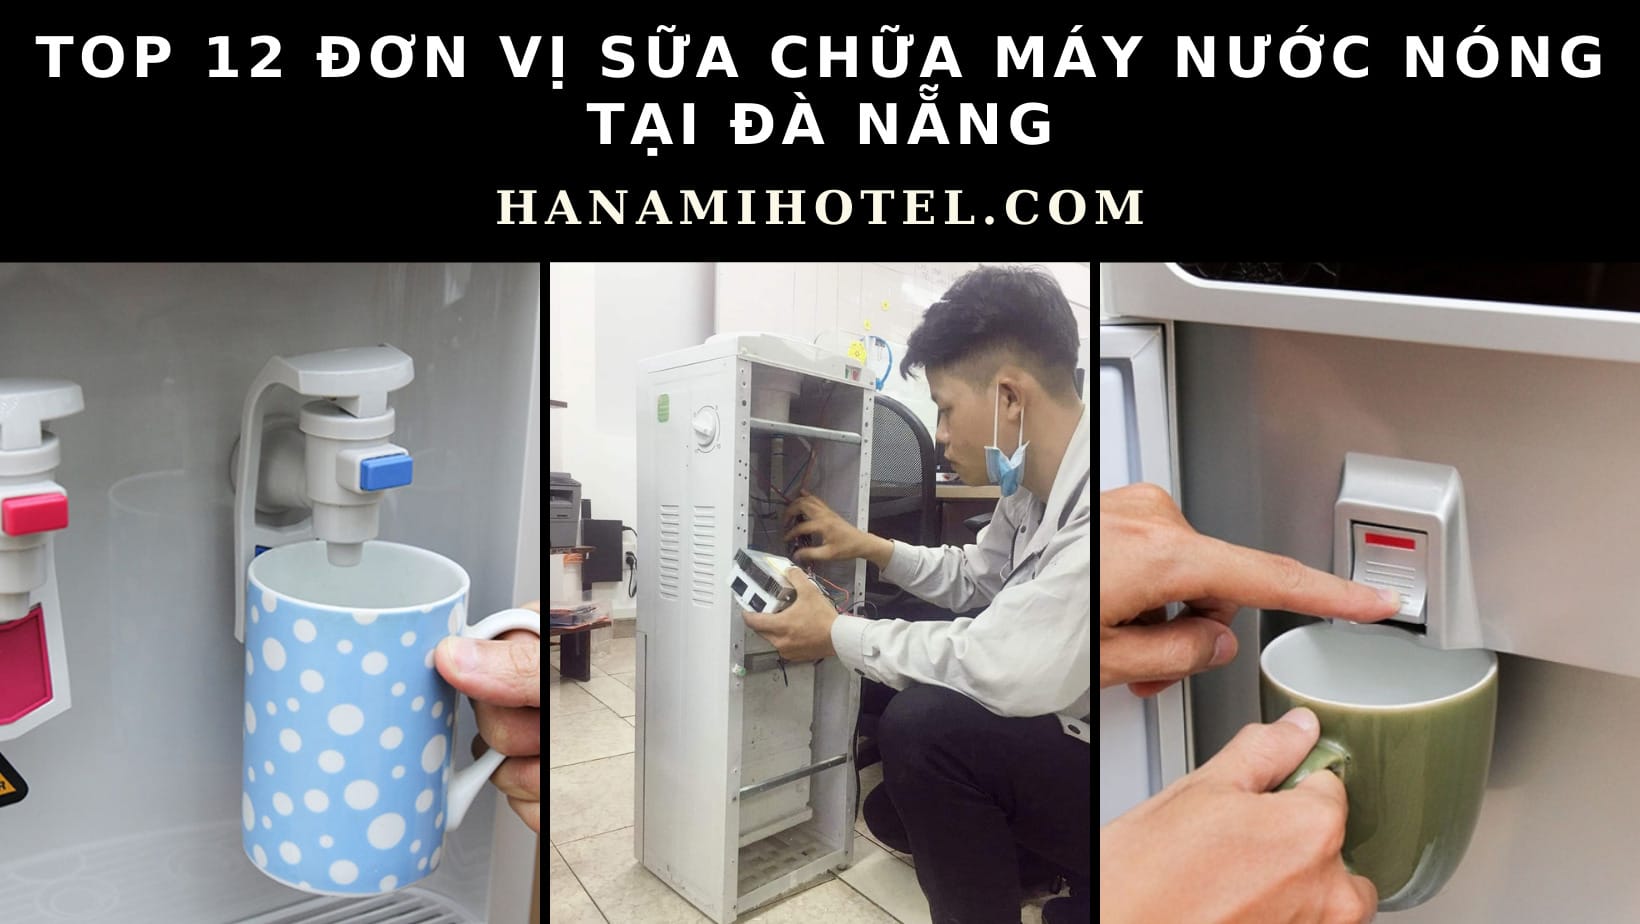 Đơn vị sửa chữa máy nước nóng tại Đà Nẵng